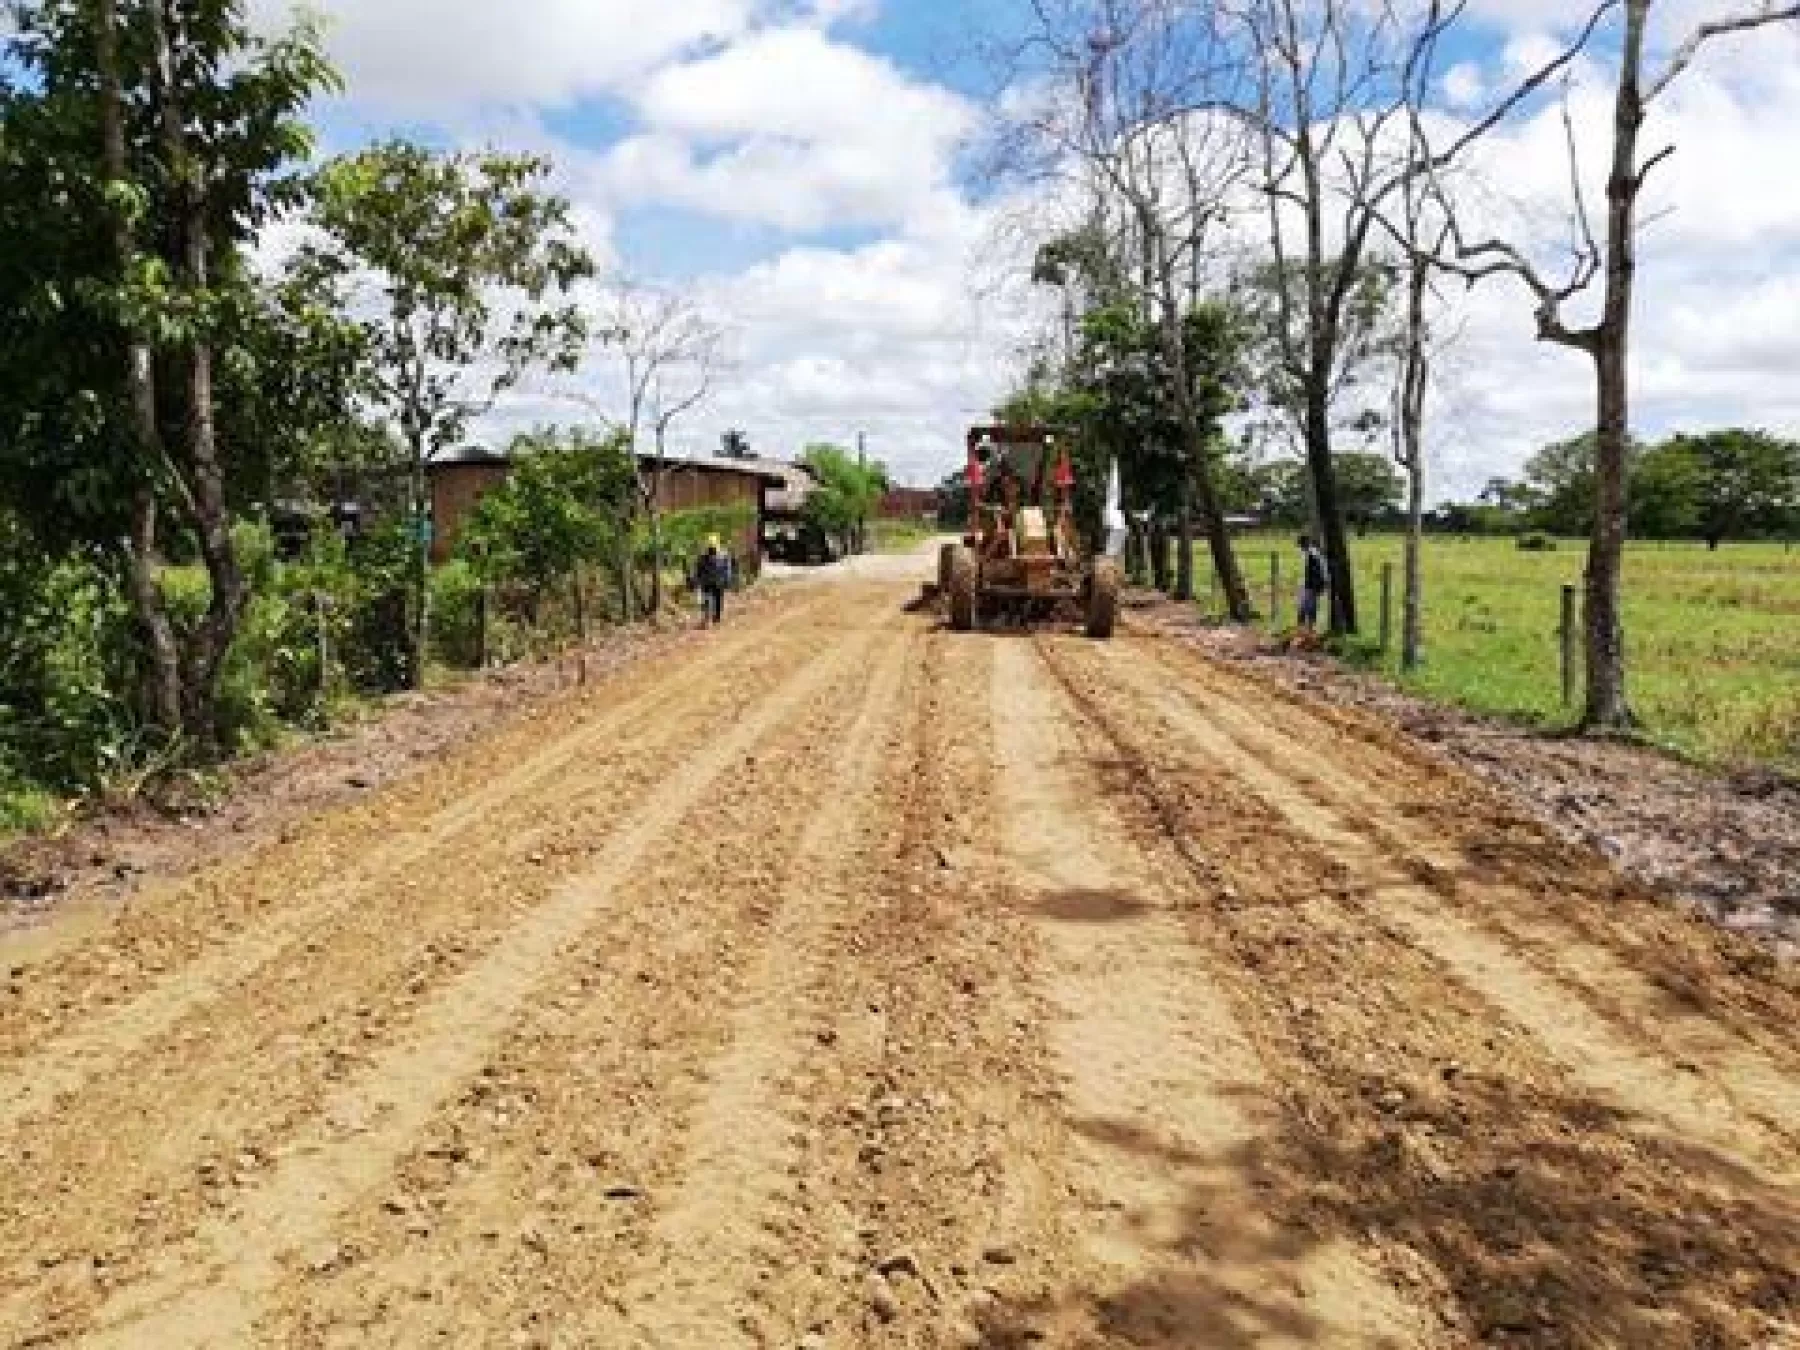 Sigue avanzando las obras de protección de la ribera del río Arauca en zonas rurales del municipio de Arauca, realizadas por la gobernación.